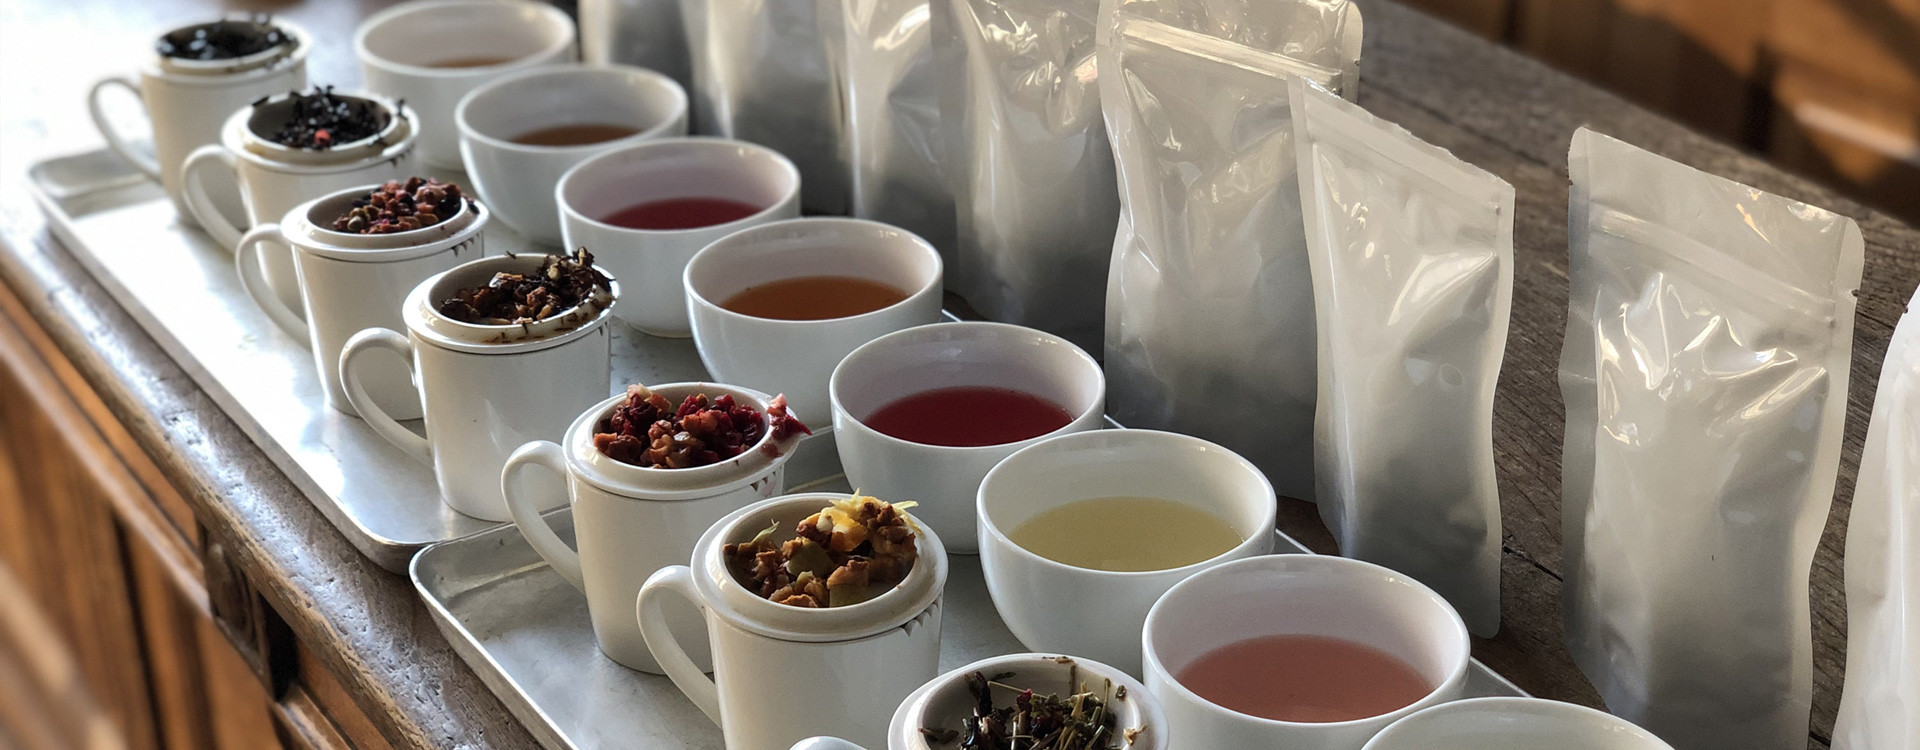 Thé noir ou thé vert, quelle différence ? Lequel est fait pour vous ?